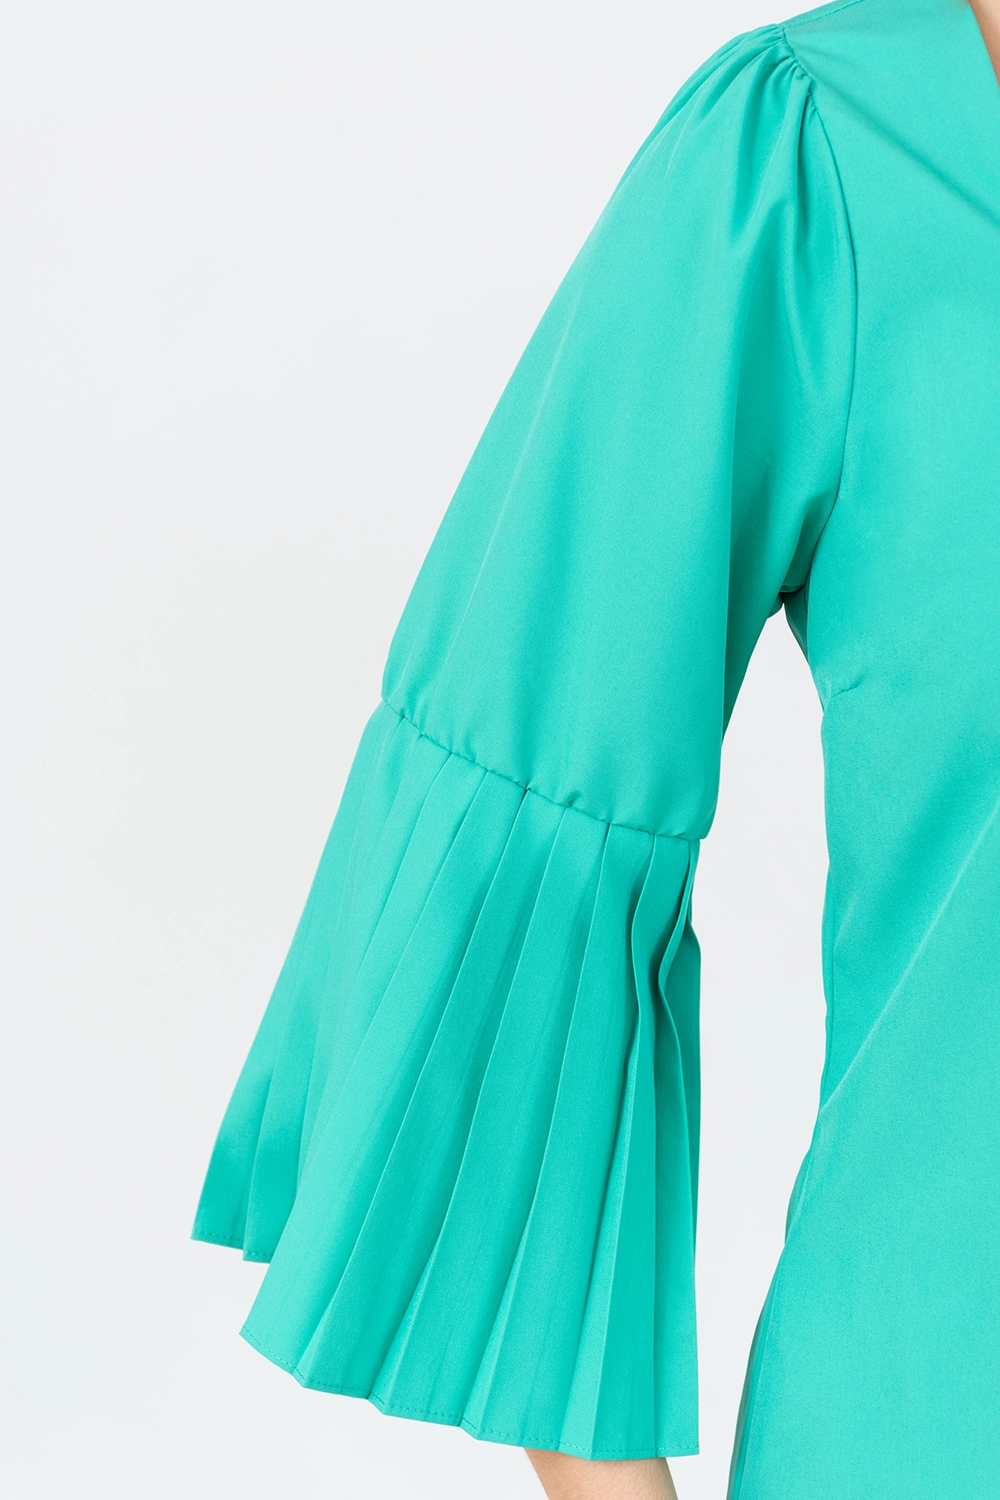 Blusa maga 3/4 plisada escote cuadrado. Verde esmeralda talla 12